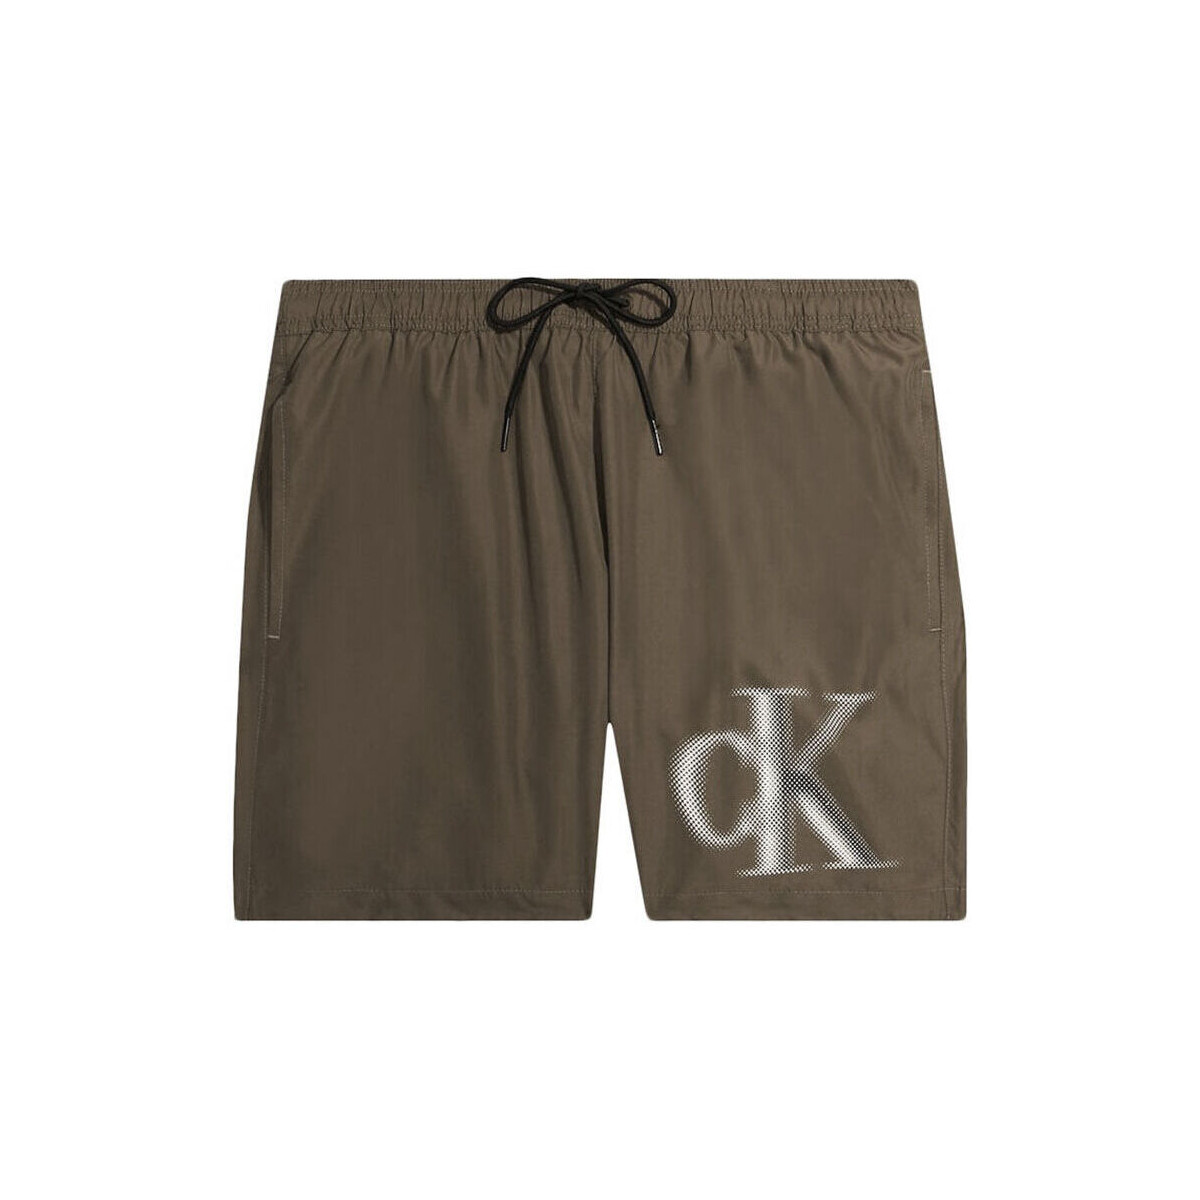 vaatteet Miehet Shortsit / Bermuda-shortsit Calvin Klein Jeans km0km00800-gxh brown Ruskea